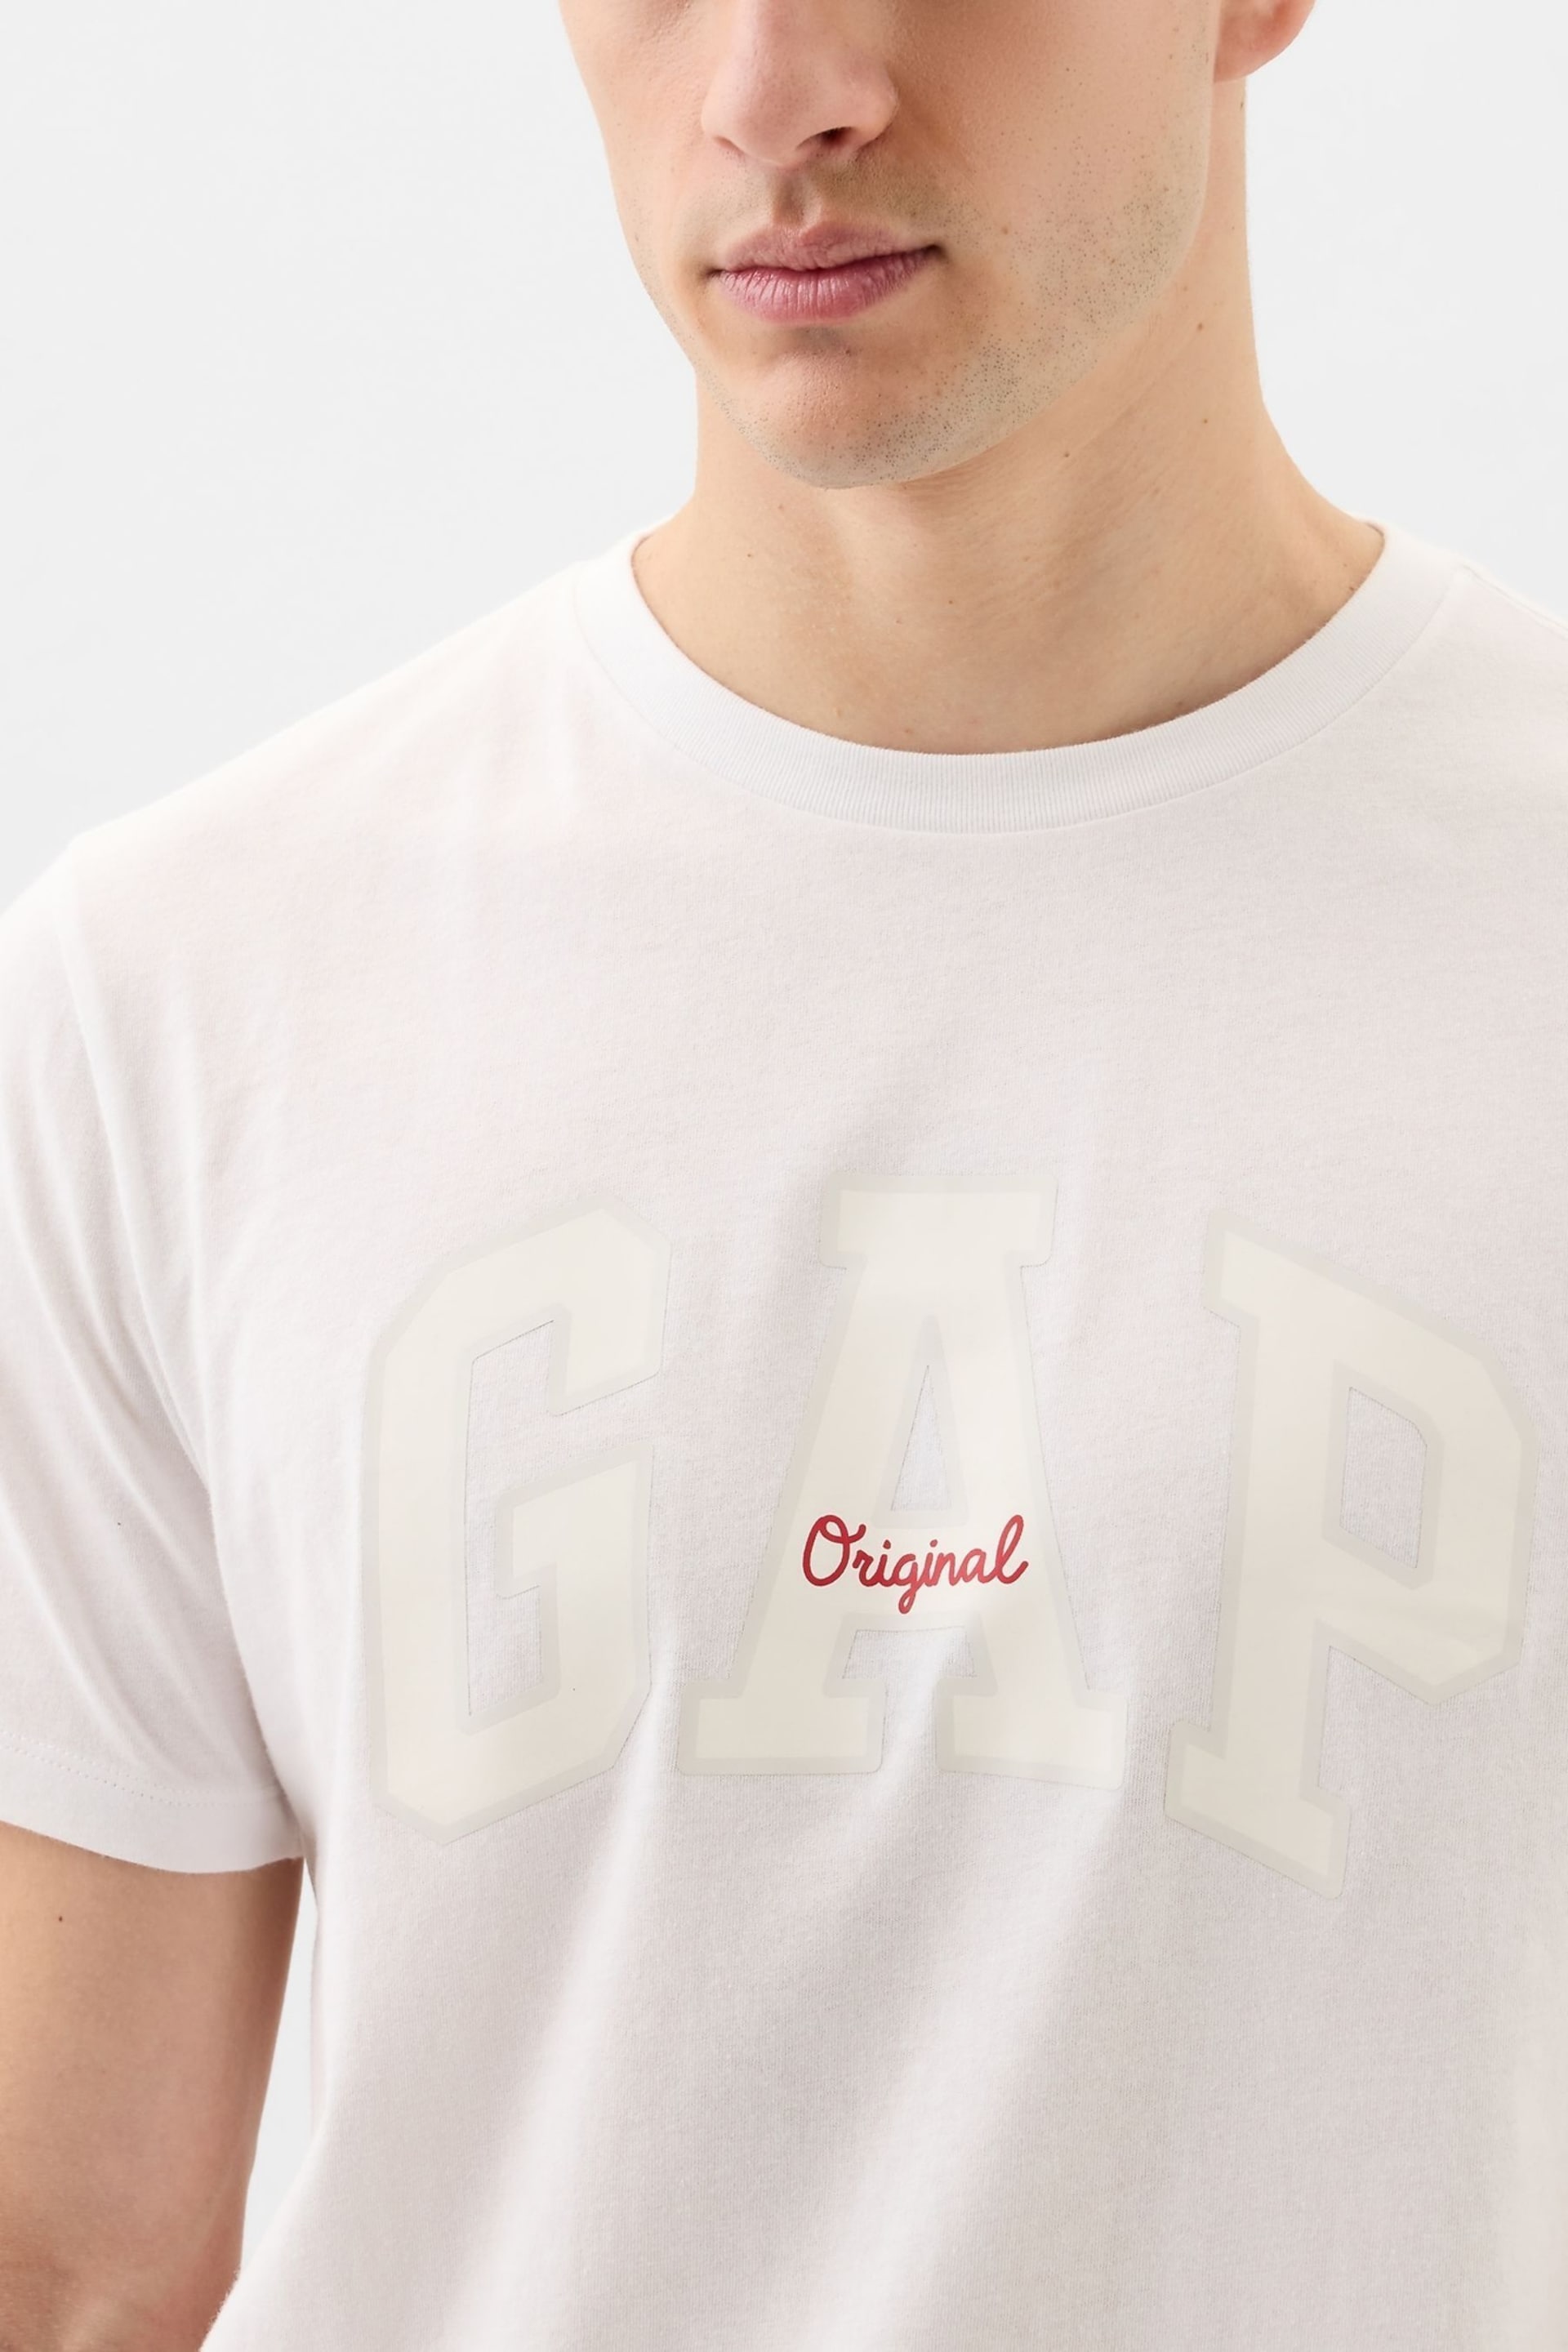 Gap White Logo Short Sleeve Crew Neck T Shirt - Image 7 of 8